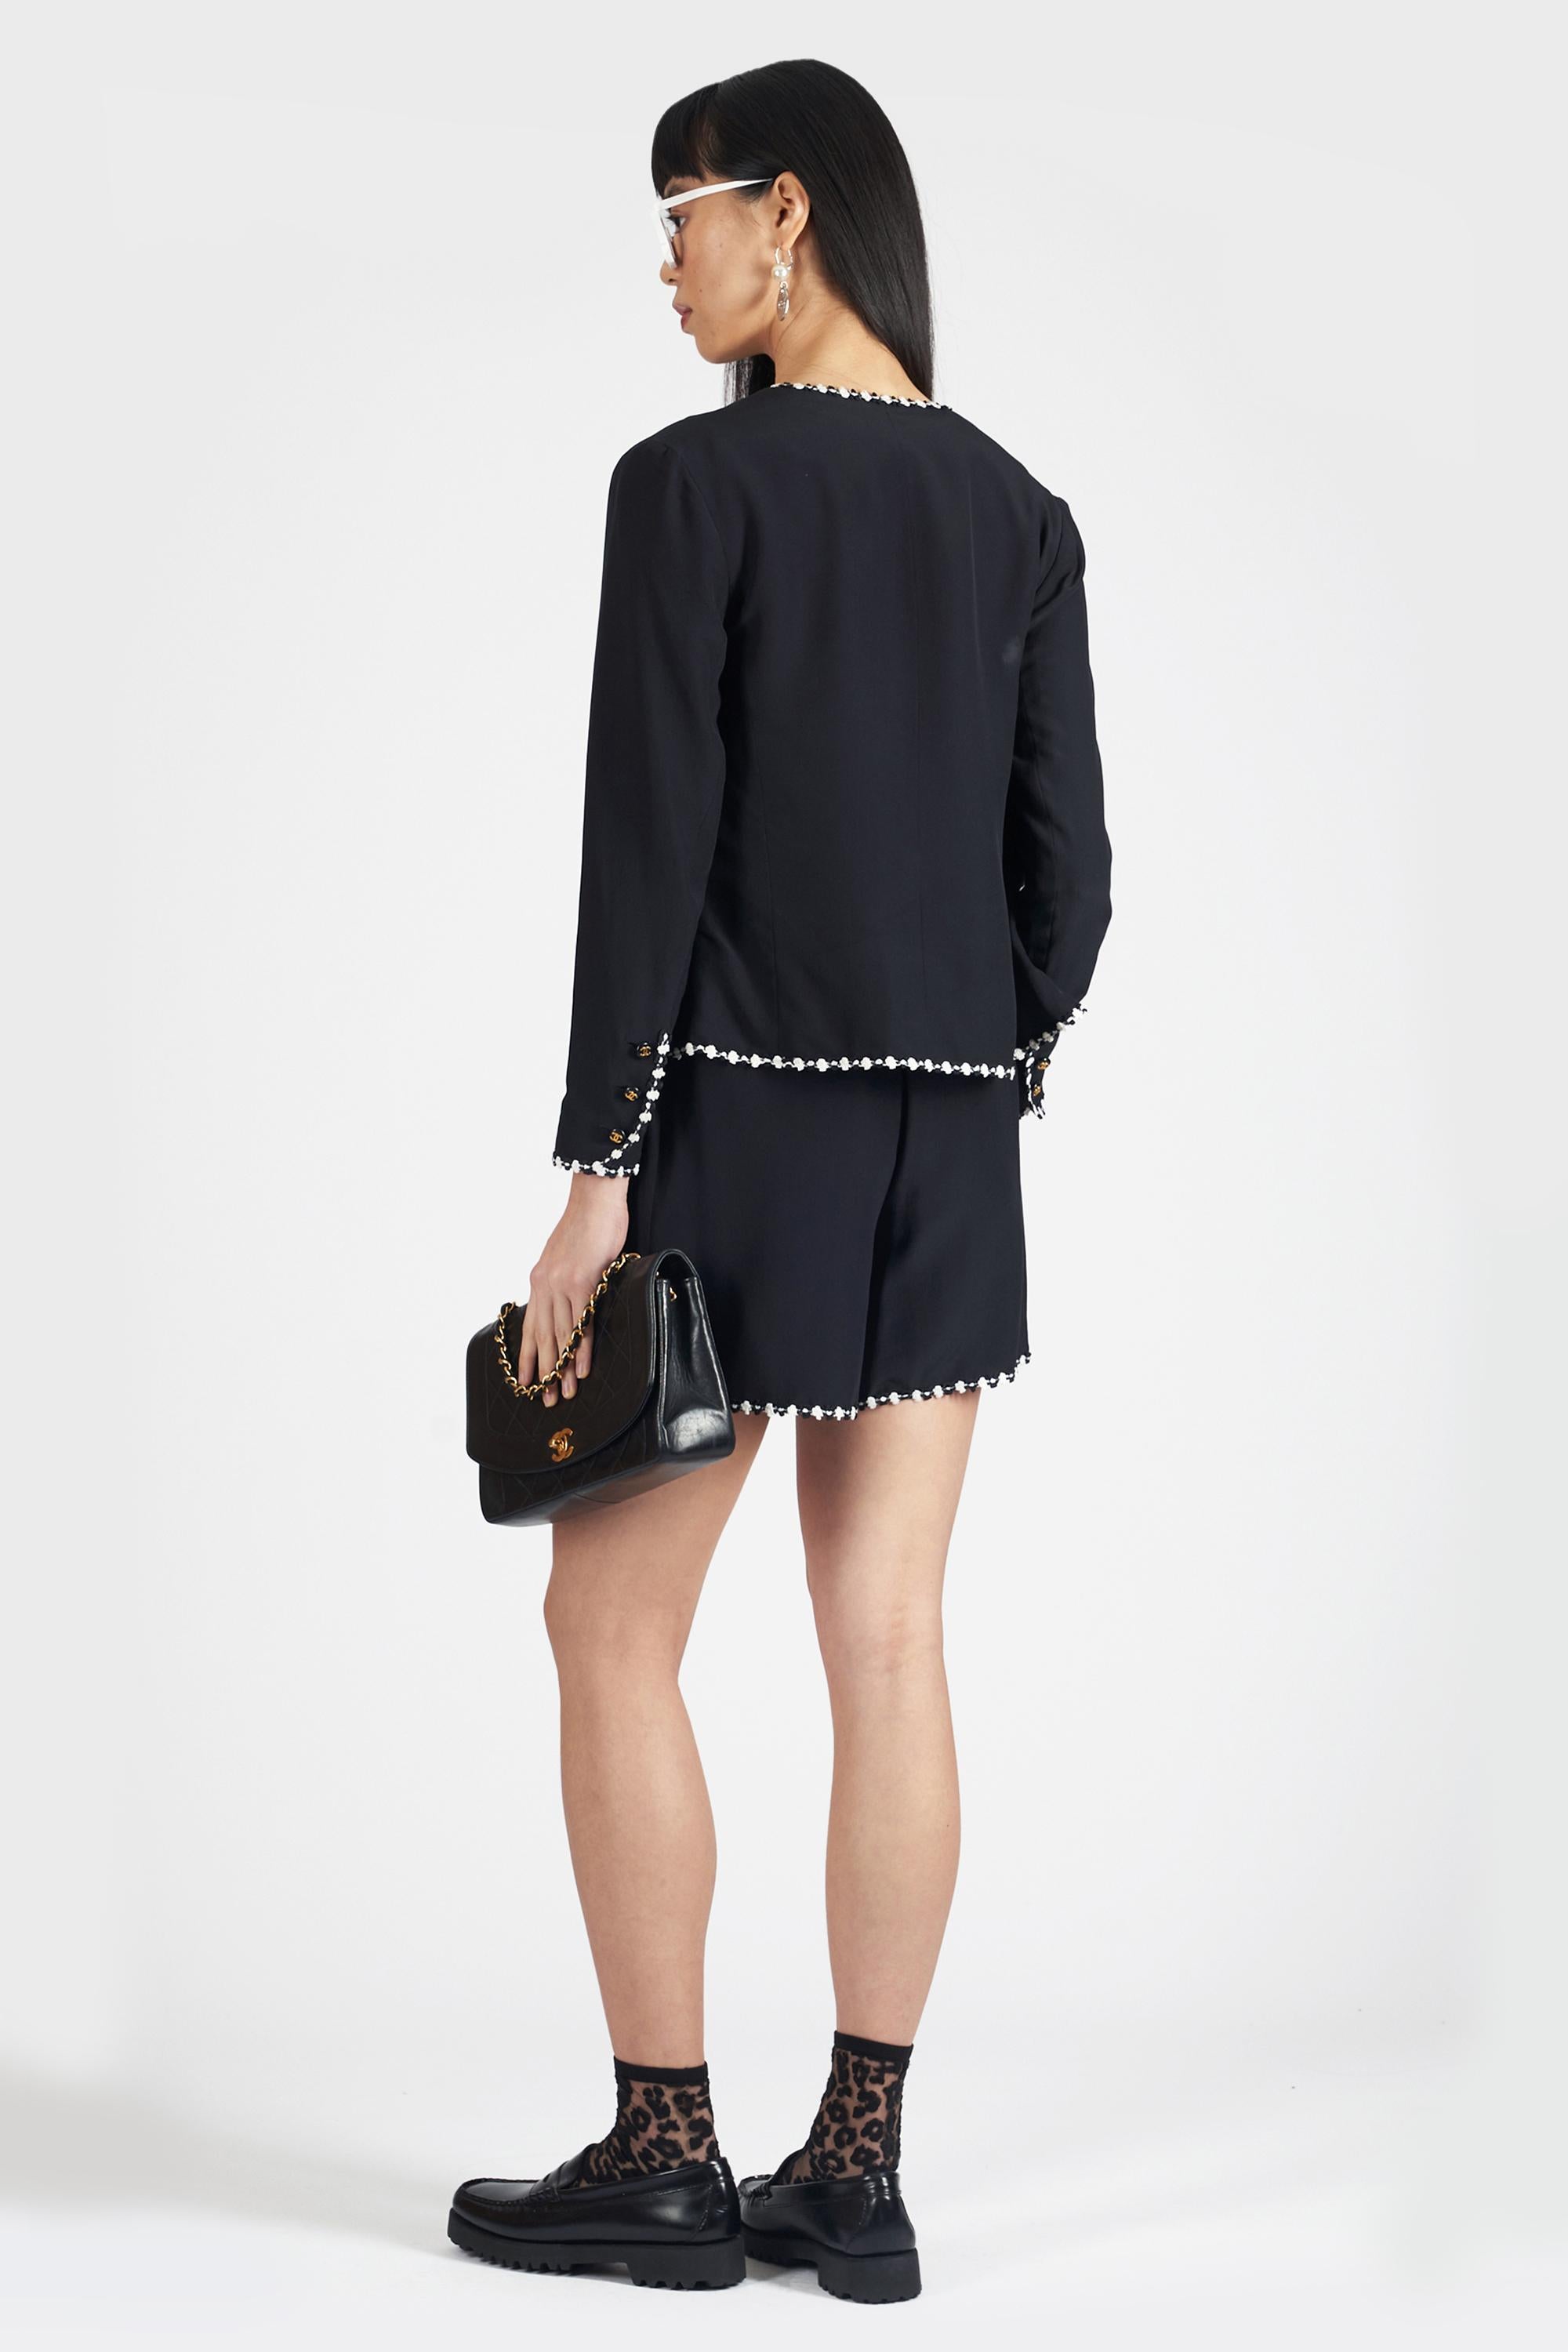 Chanel 1994 dreiteiliges schwarzes maßgeschneidertes Set. Mit Weste, Strickjacke und Shorts, Stickerei am Halsausschnitt, an den Taschen und am Saum sowie Chanel-Logo auf den Knöpfen. In ausgezeichnetem Vintage-Zustand. Bitte beachten Sie, dass sich